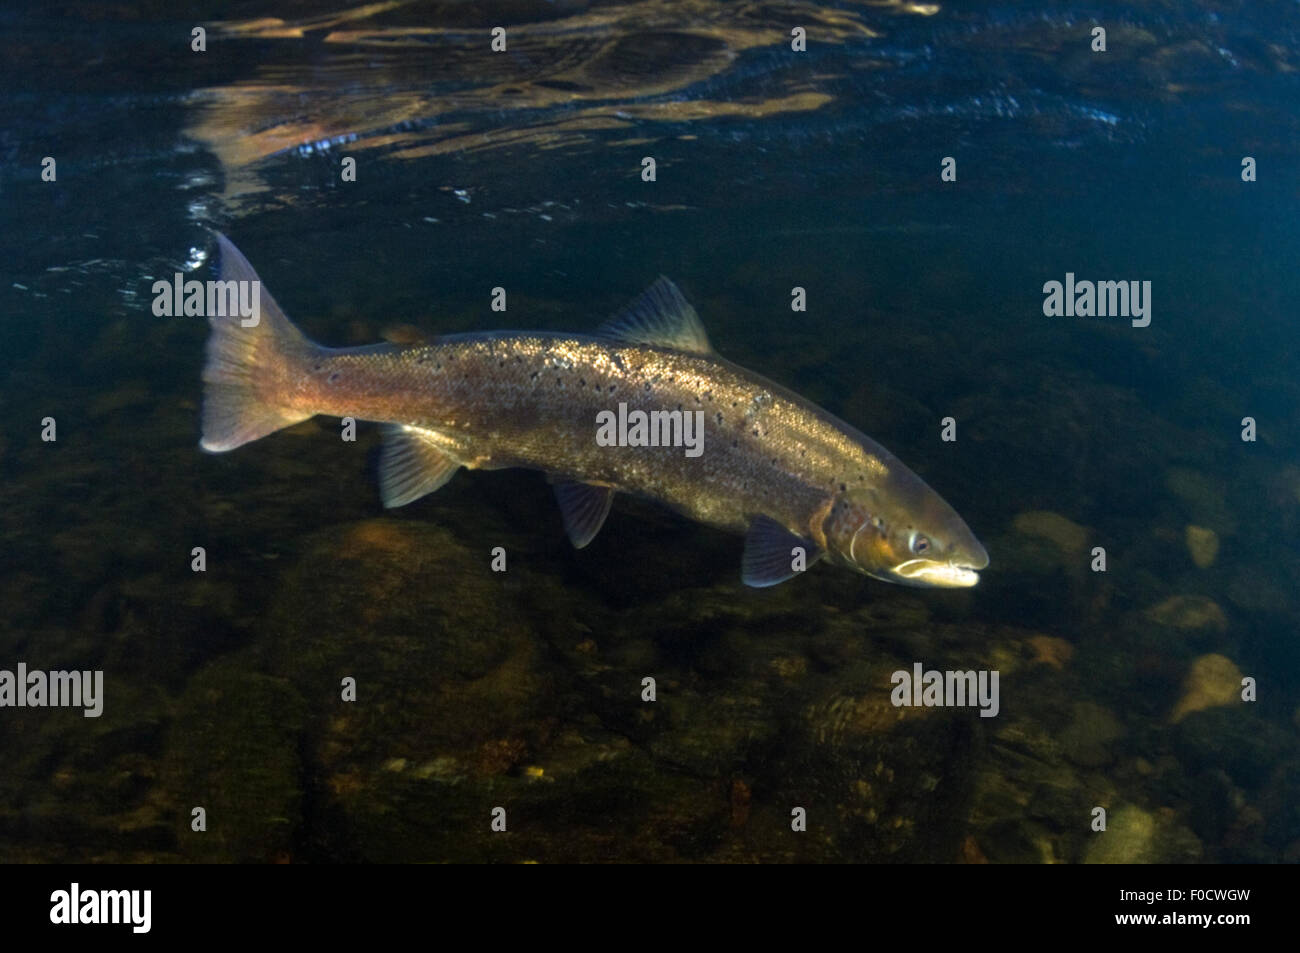 Atlantic salmon (Salmo salar) female, River Orkla, Norway, September 2008 Stock Photo